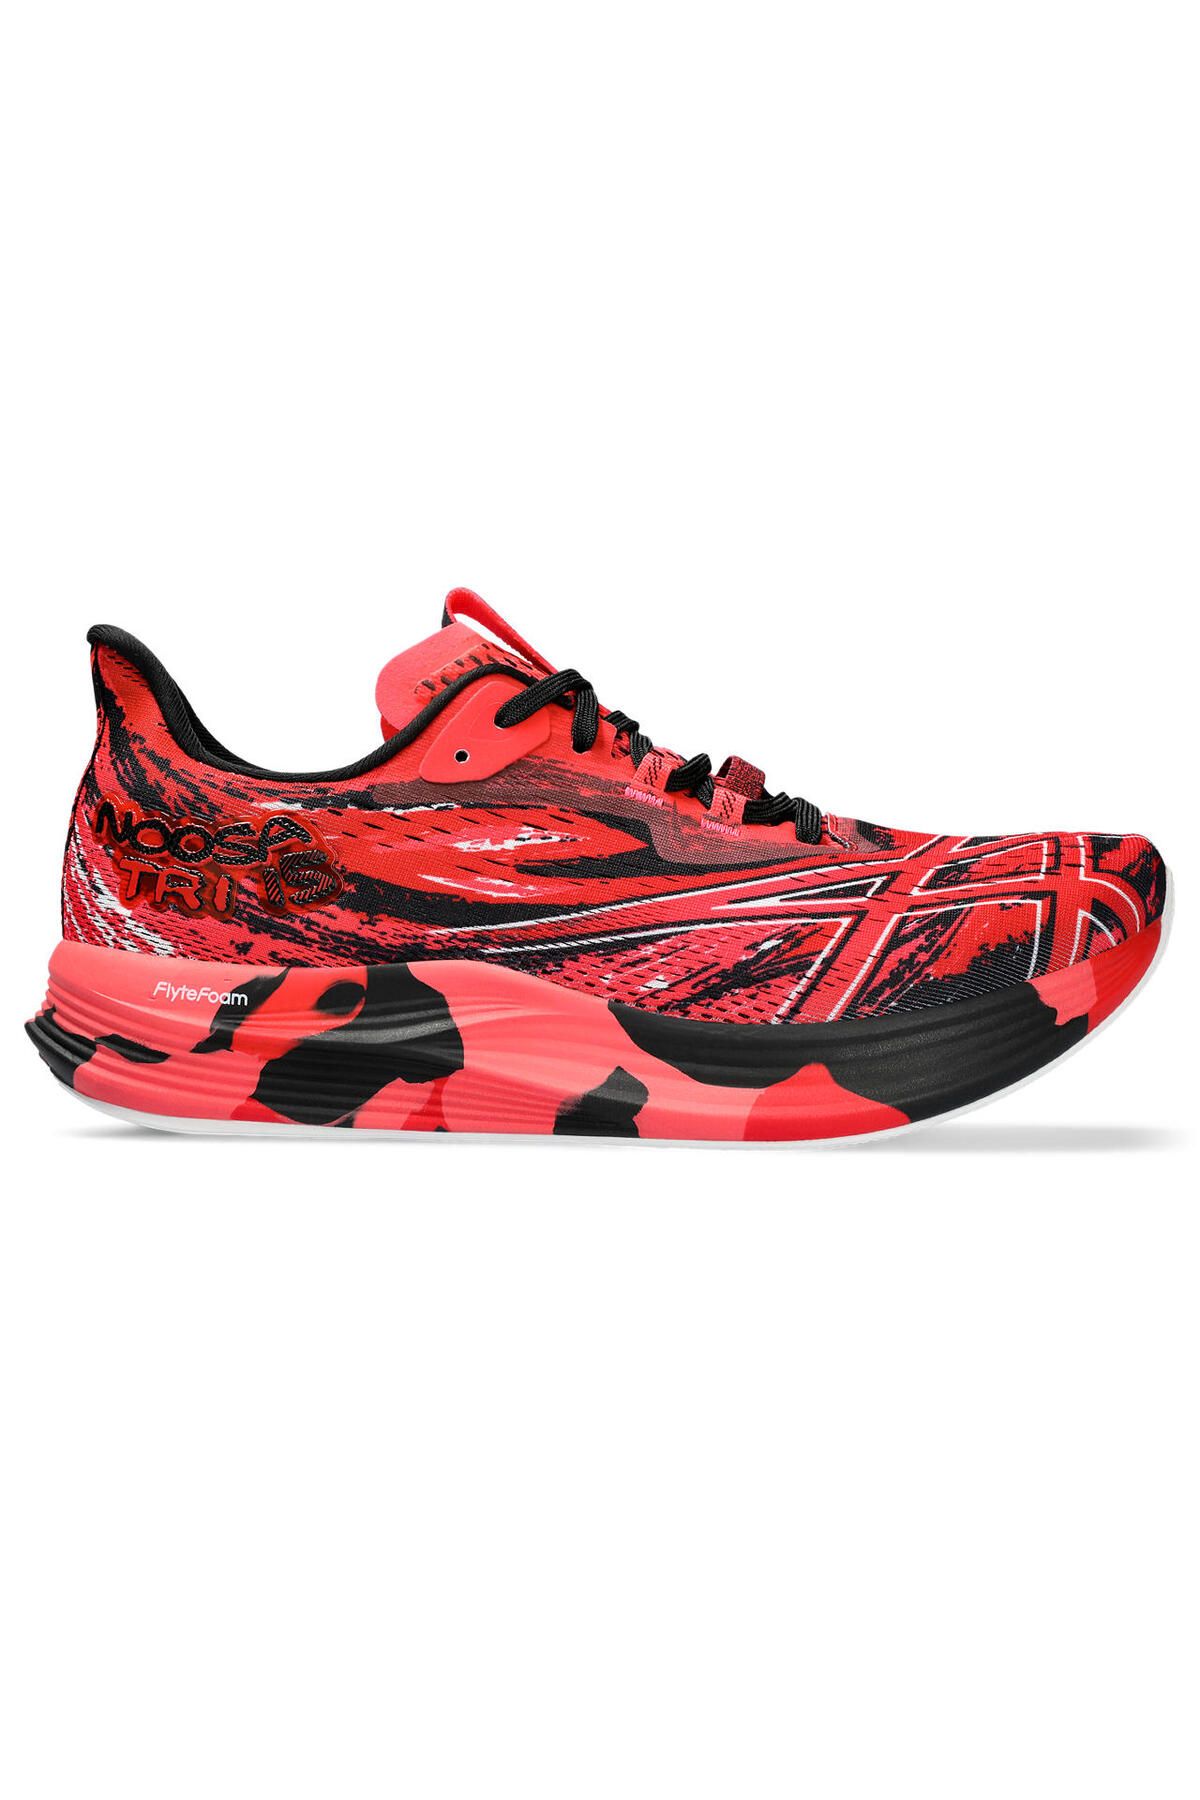 Asics Noosa Tri 15 Erkek Kırmızı Koşu Ayakkabısı 1011b609-600